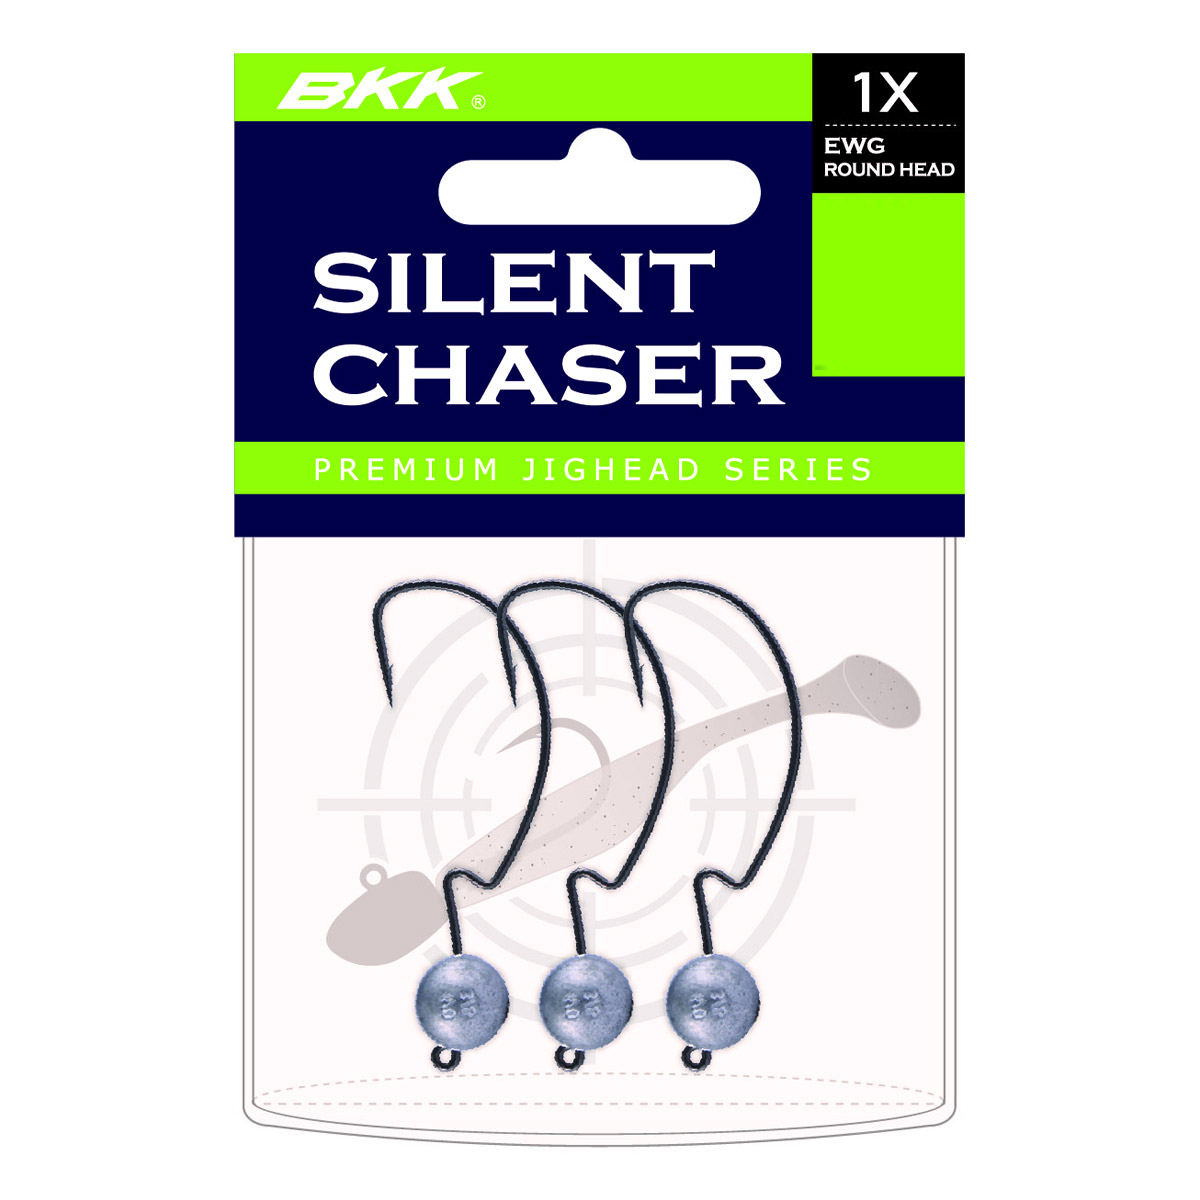 BKK Silent Chaser EWG 1X Round Head Size 2/0